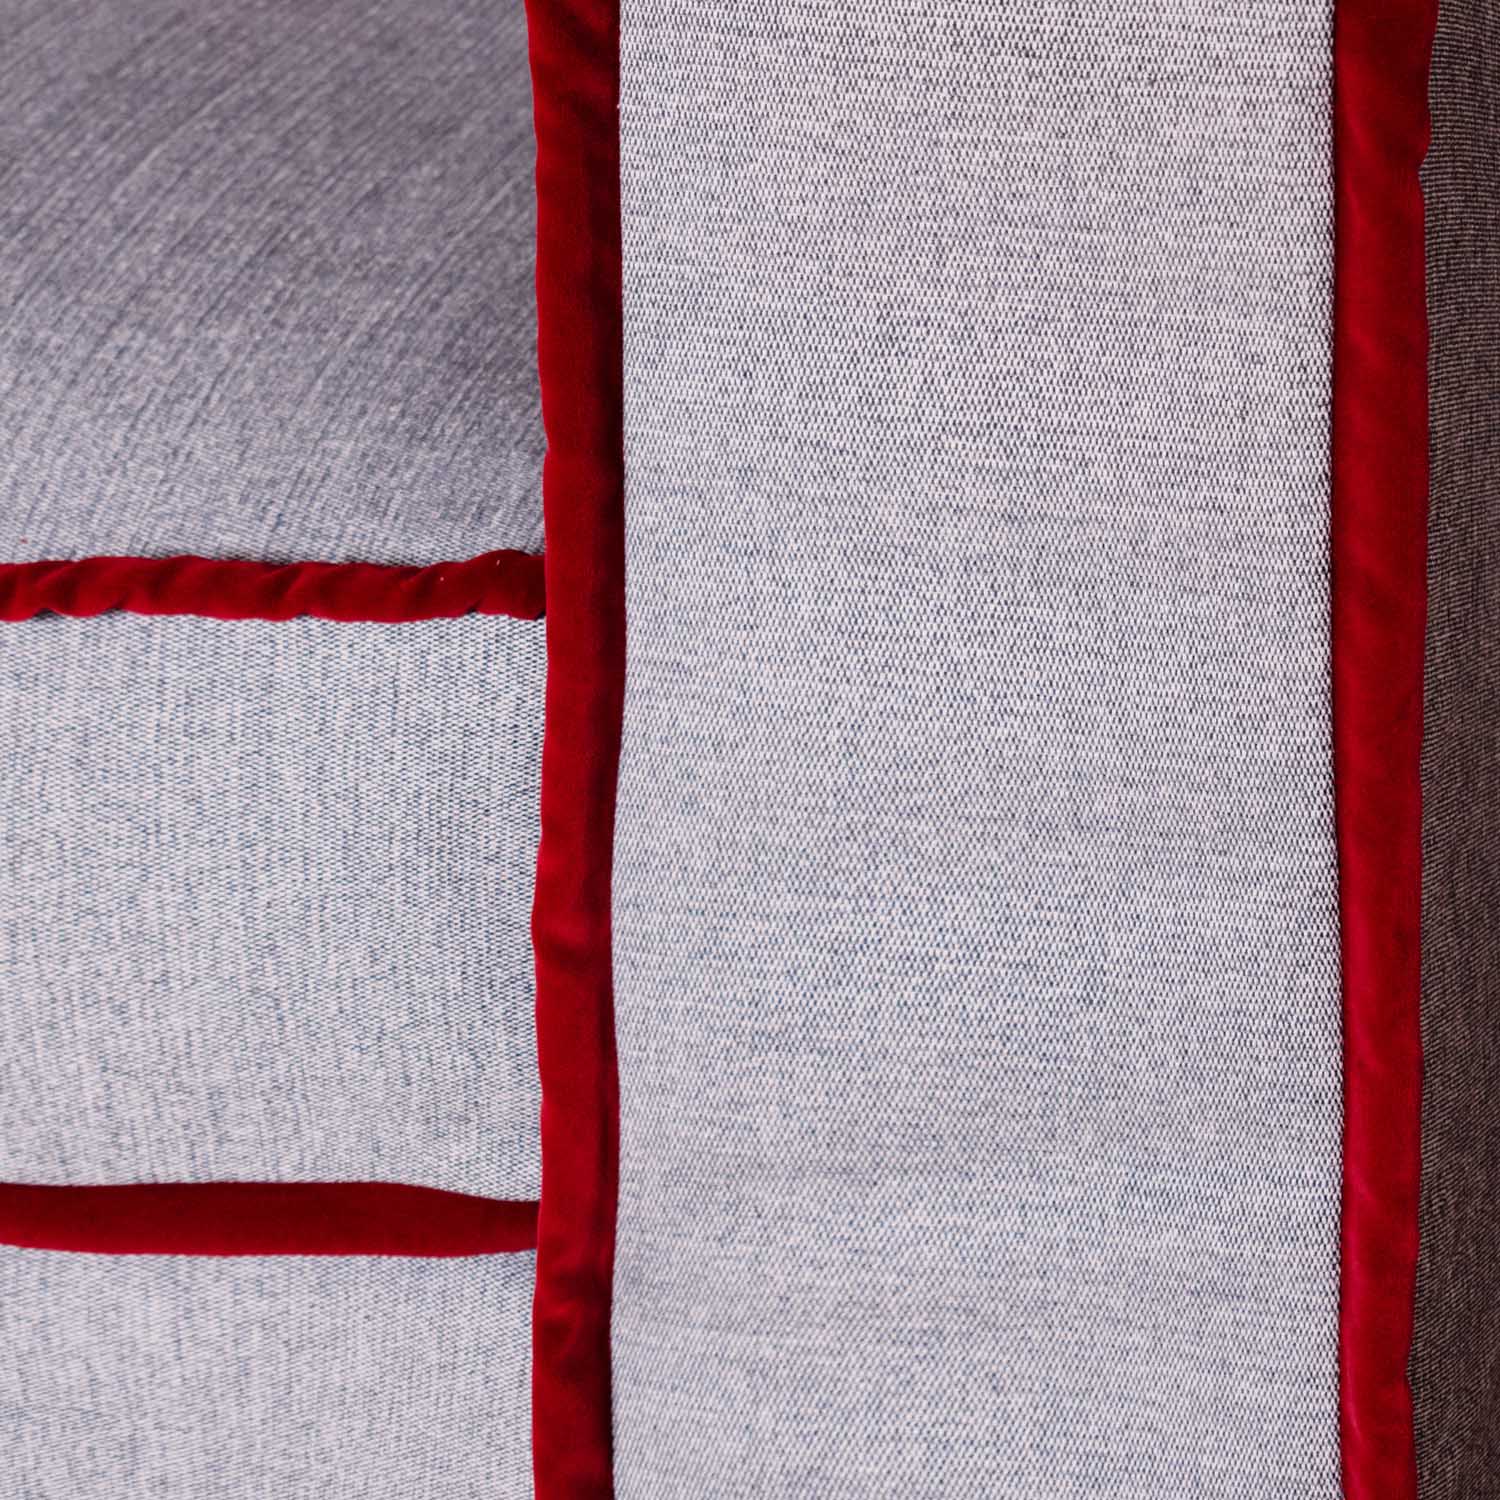 Plush Cushions for Added Comfort, red velvet border